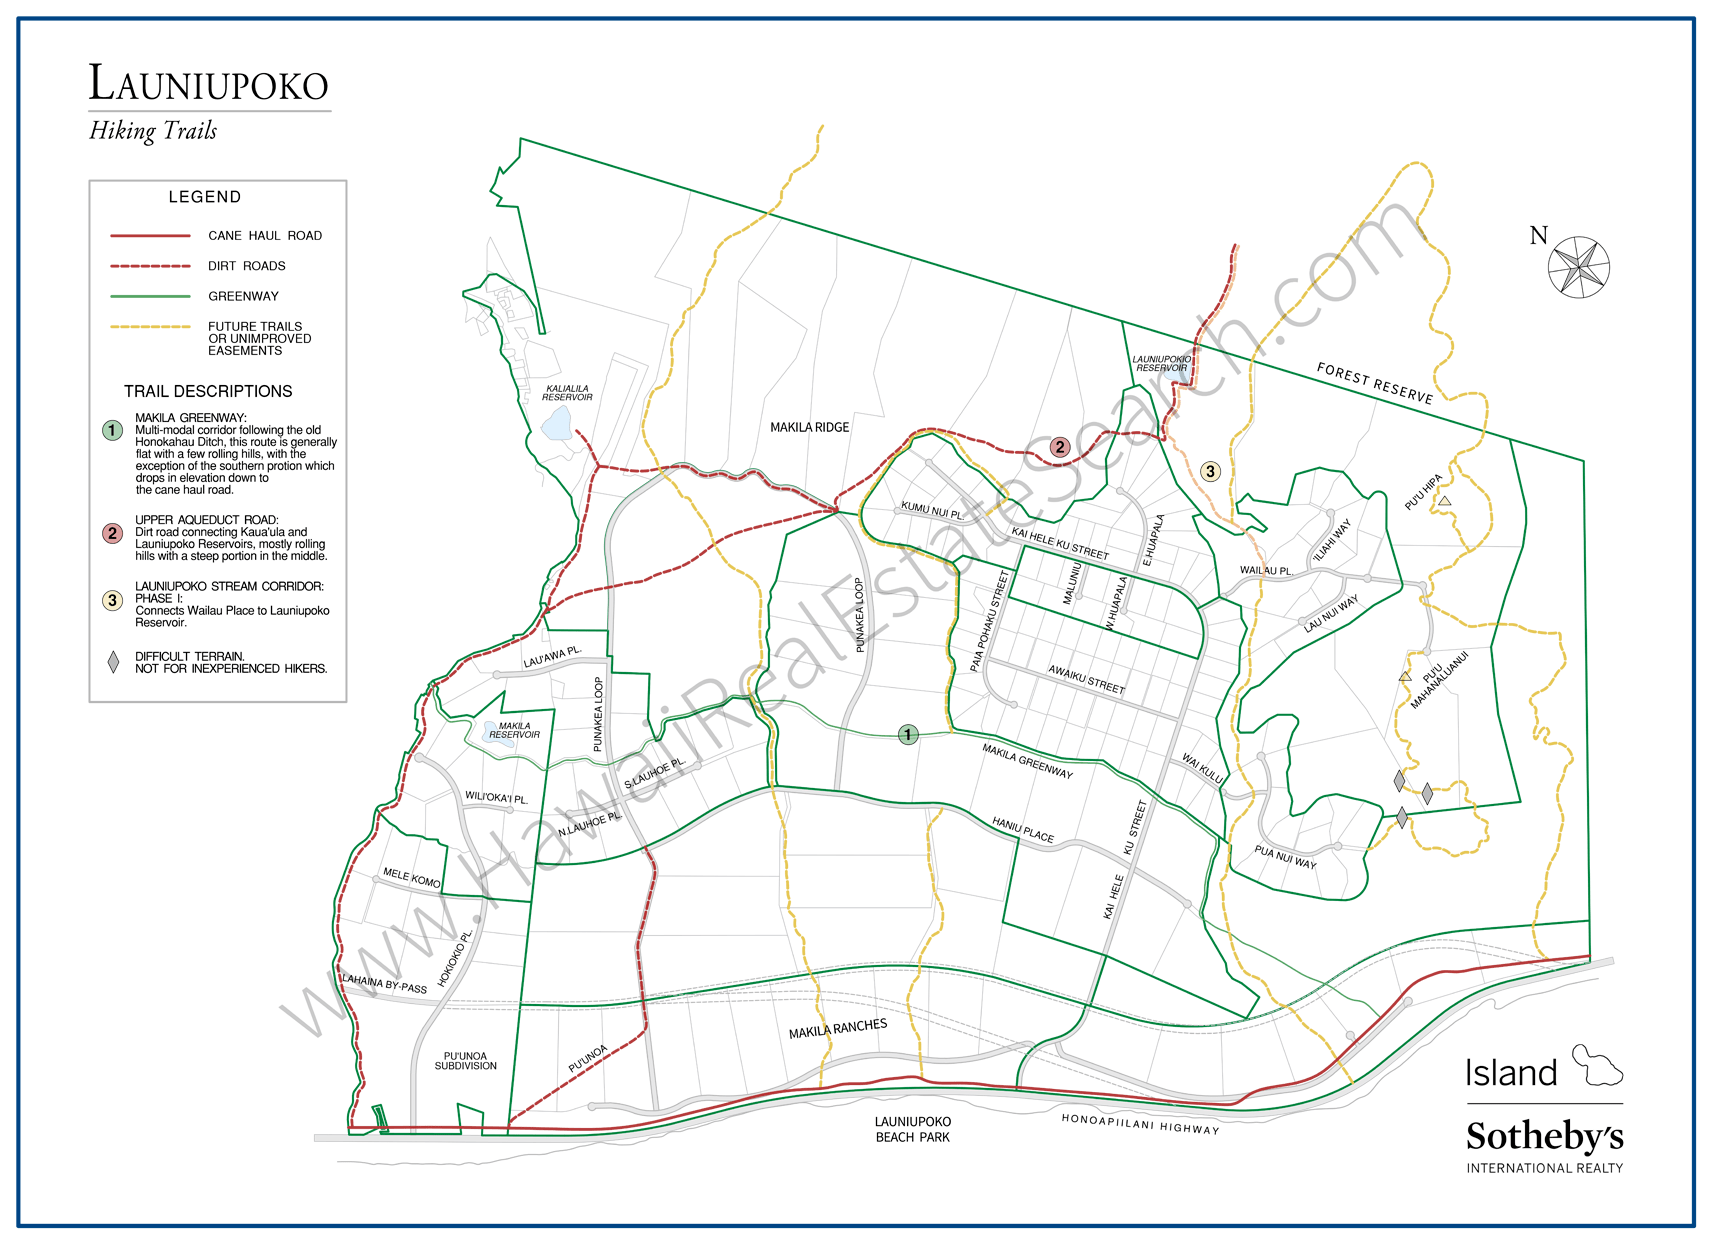 Launiupoko Real Estate Map